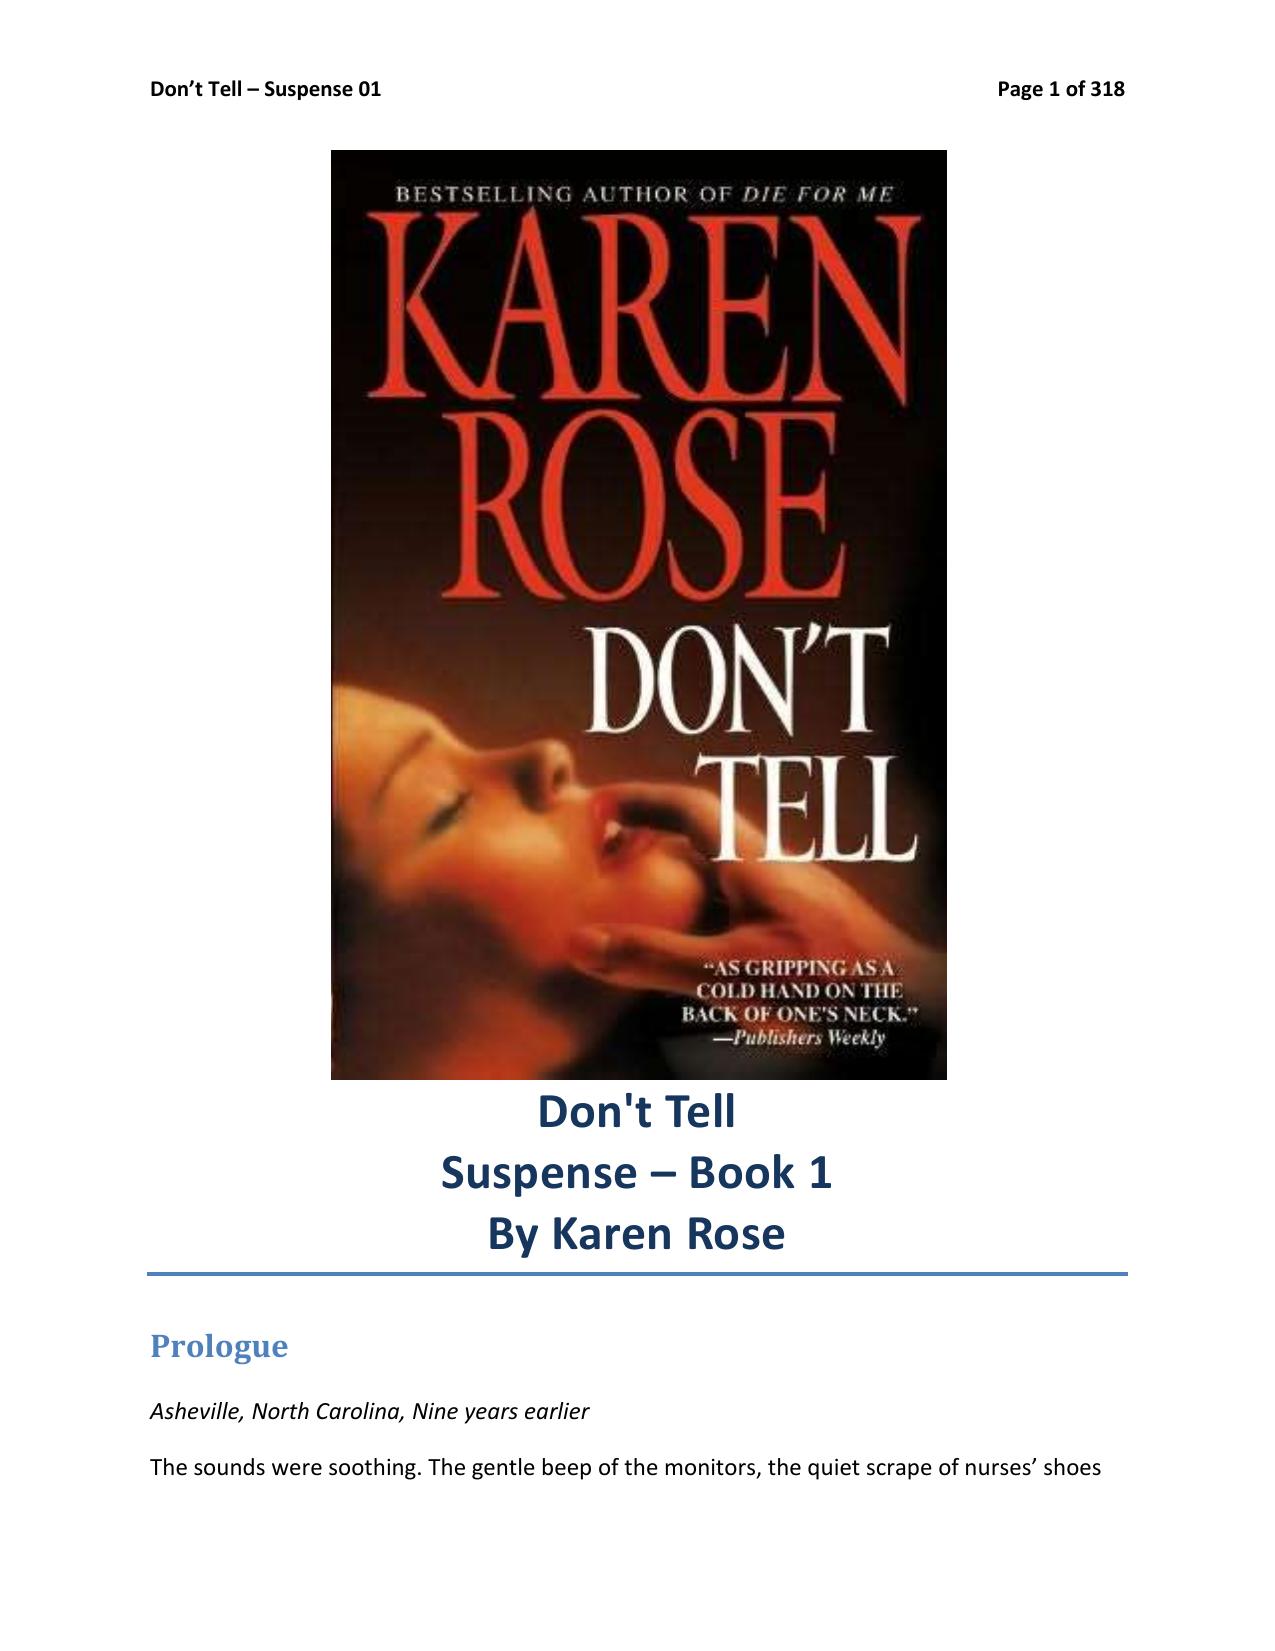 Don't Tell by Karen Rose